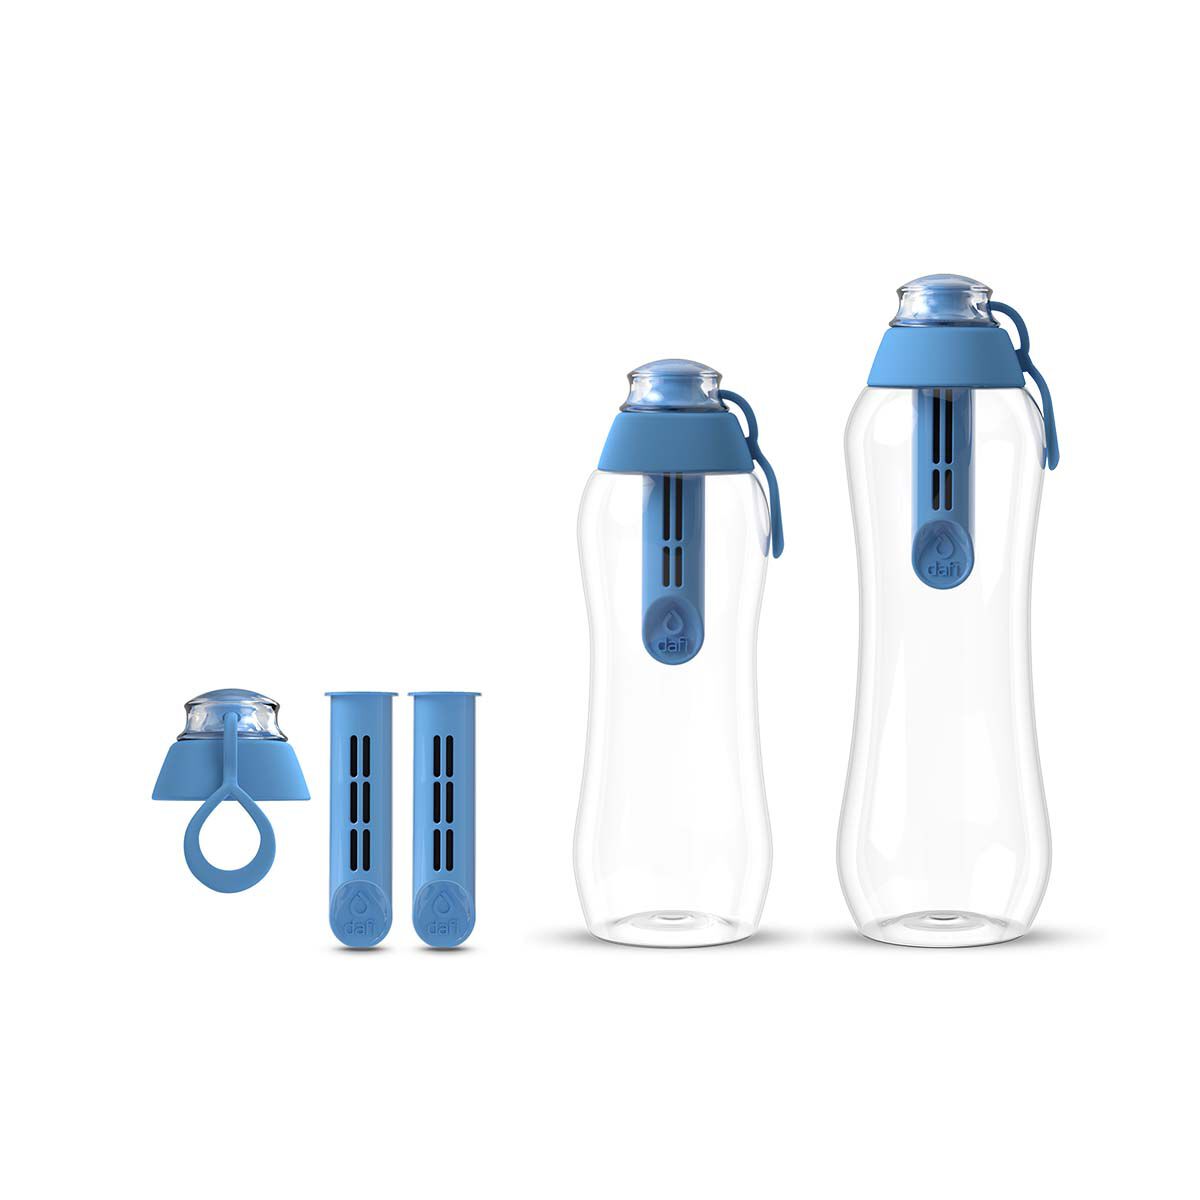 цена Набор из бутылок с угольным фильтром Dafi Soft, 5 предметов, синий